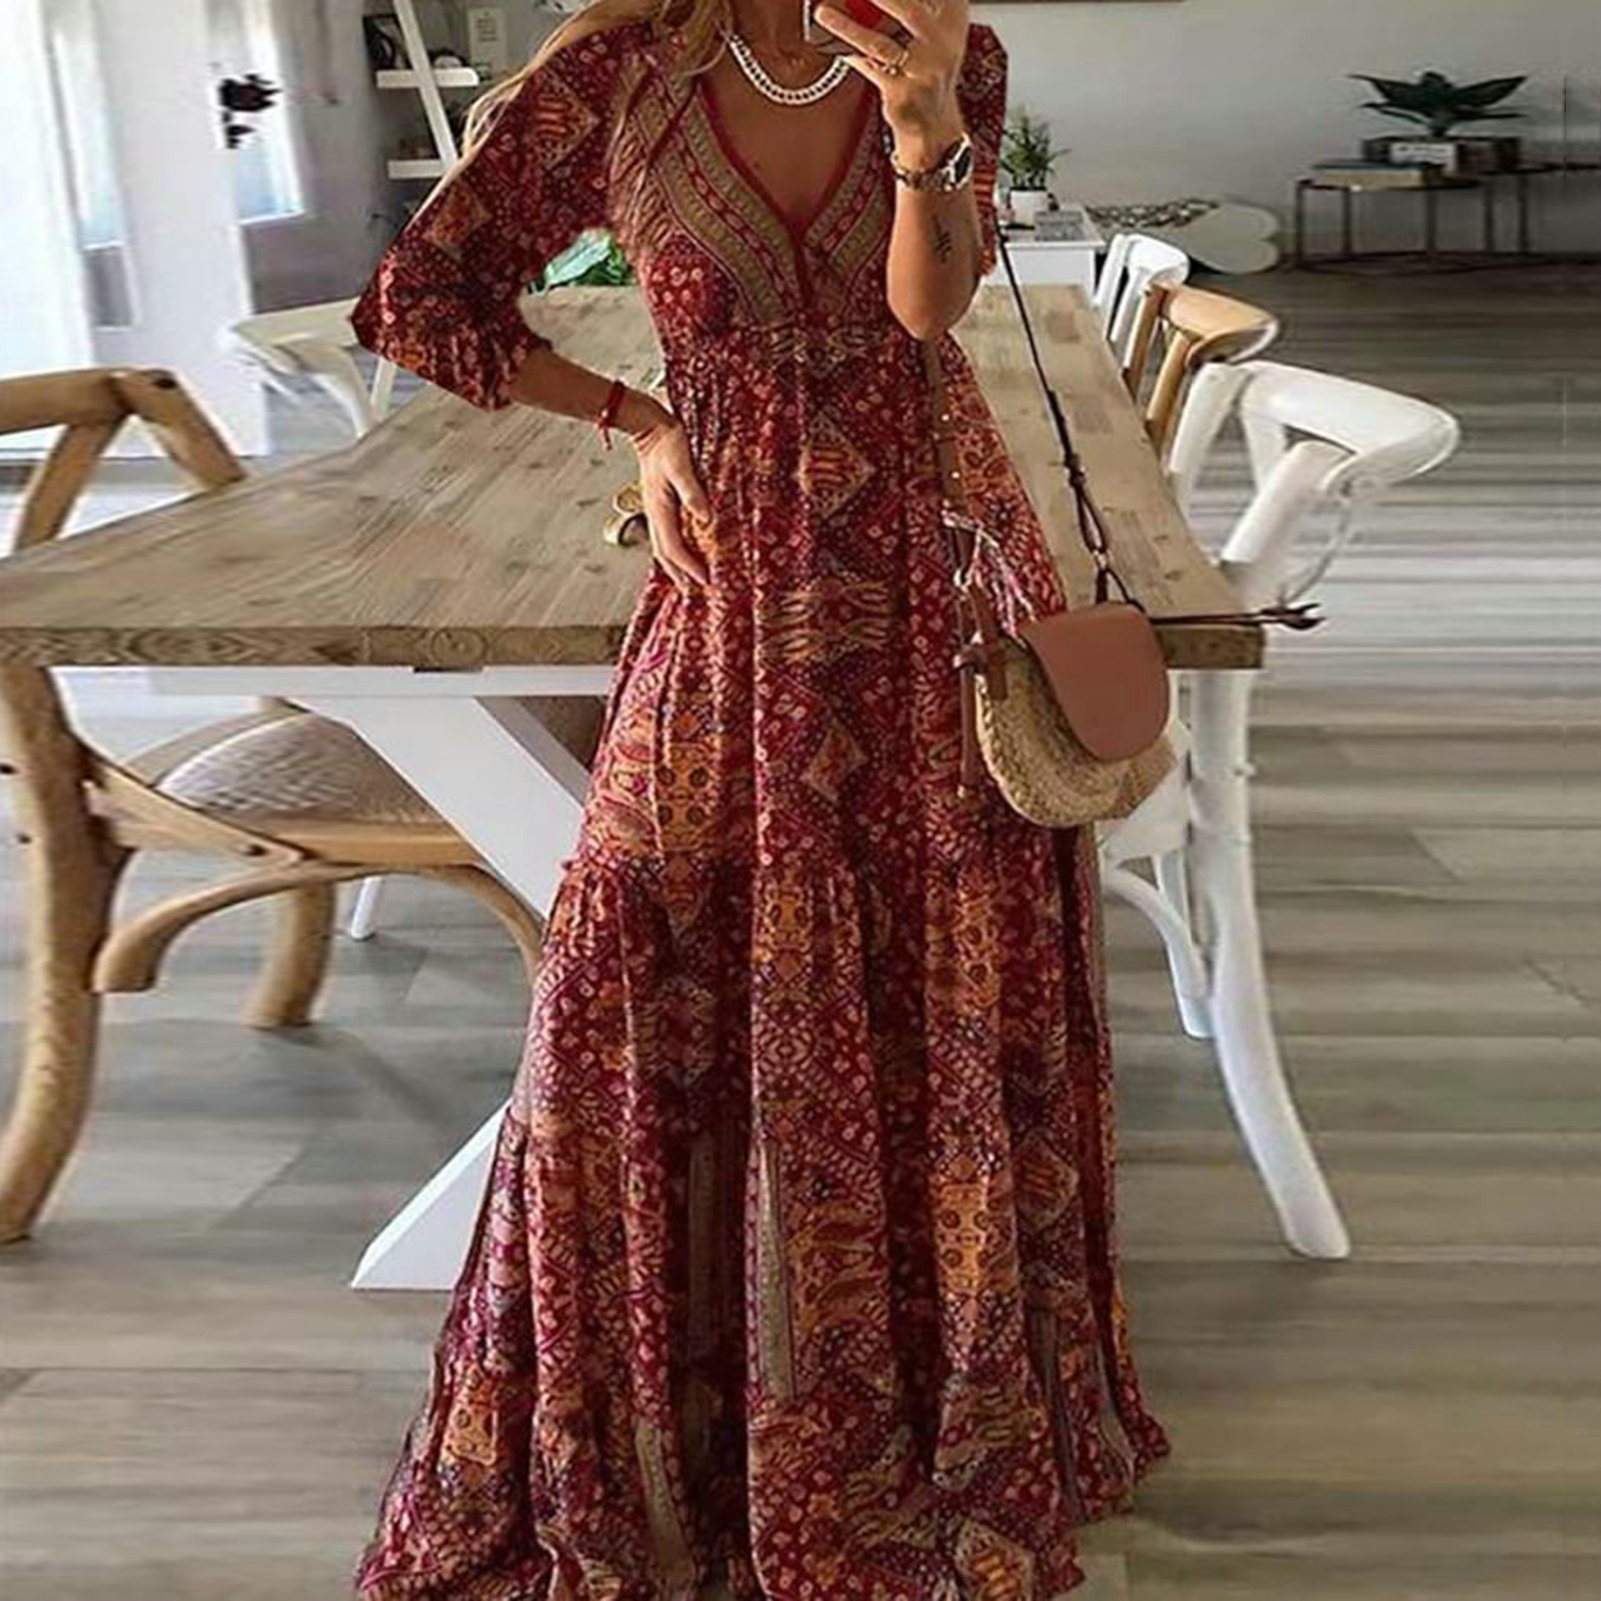 SẴN) Đầm nữ thời trang boho đỏ vintage nổi bật (đi biển, dạo phố, chụp  hình, du lịch) Boho dress | Shopee Việt Nam